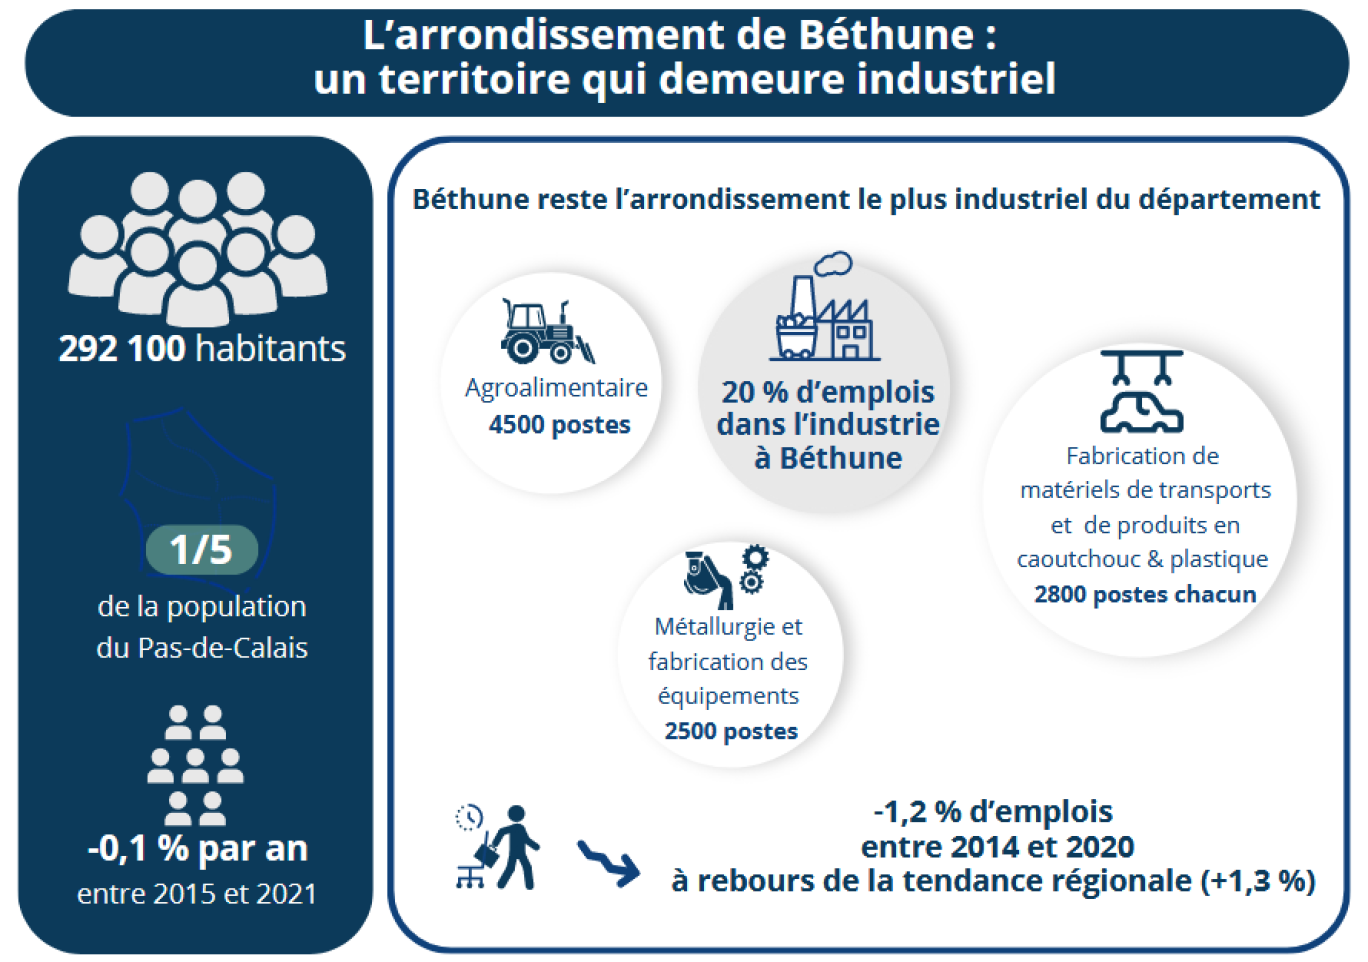 L’arrondissement de Béthune demeure le plus industriel du Pas-de-Calais. © Insee